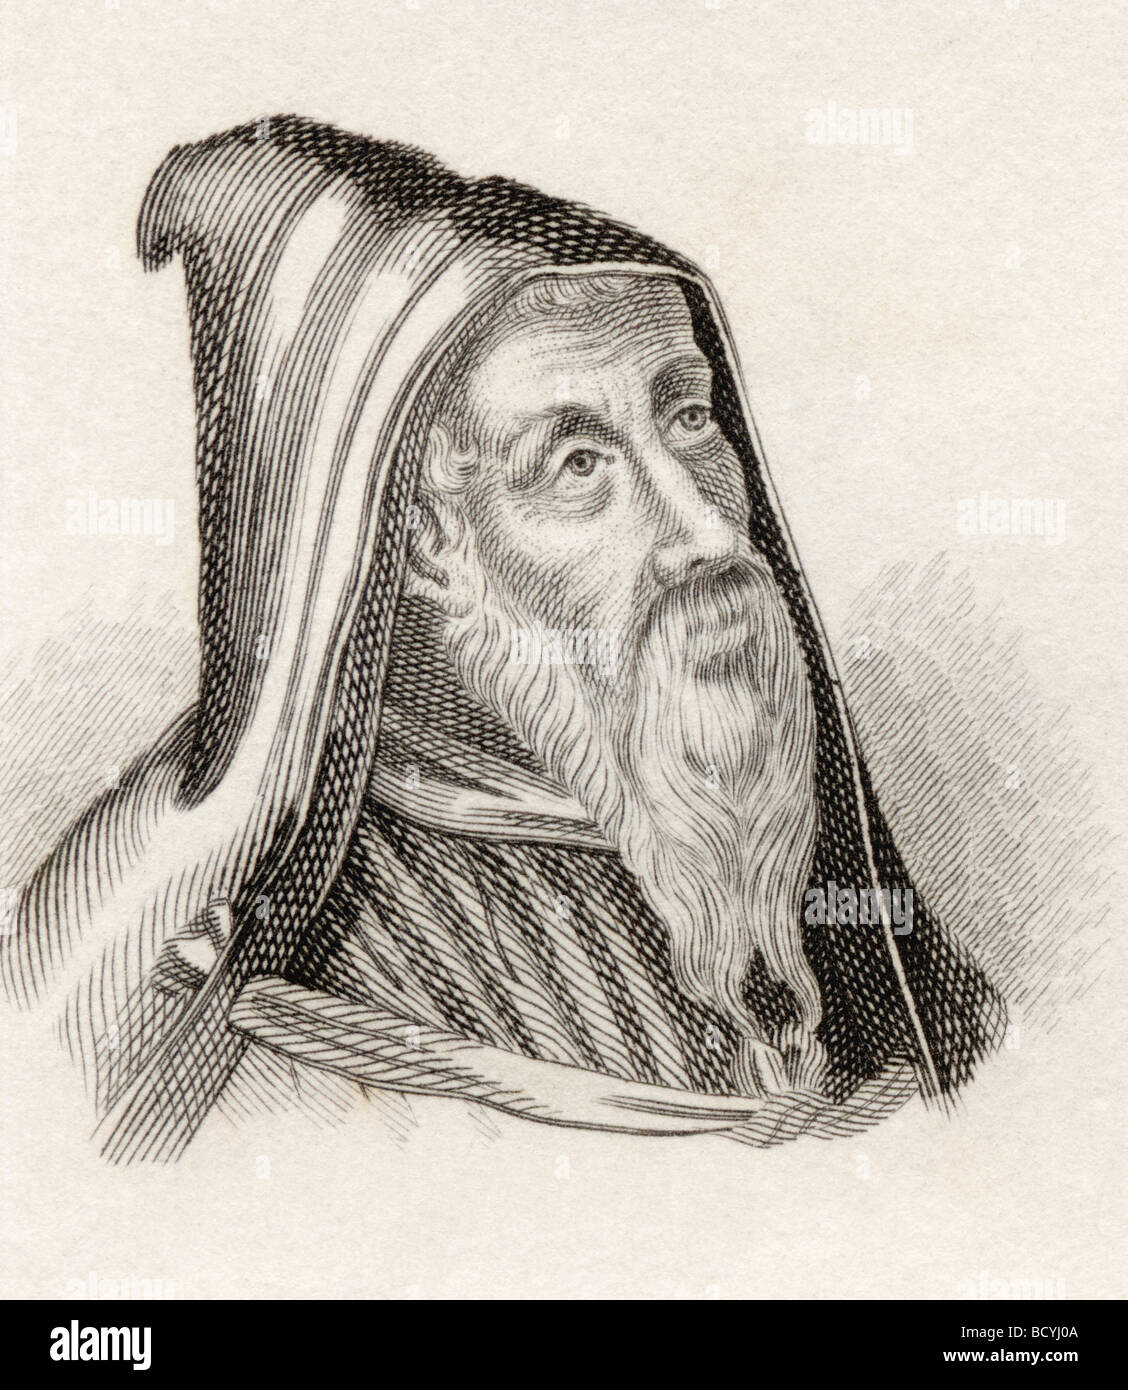 Saint Augustin d'Hippo alias St Austin, 354 - 430. Évêque d'Hippo Regius. Philosophe et théologien berbère. Banque D'Images